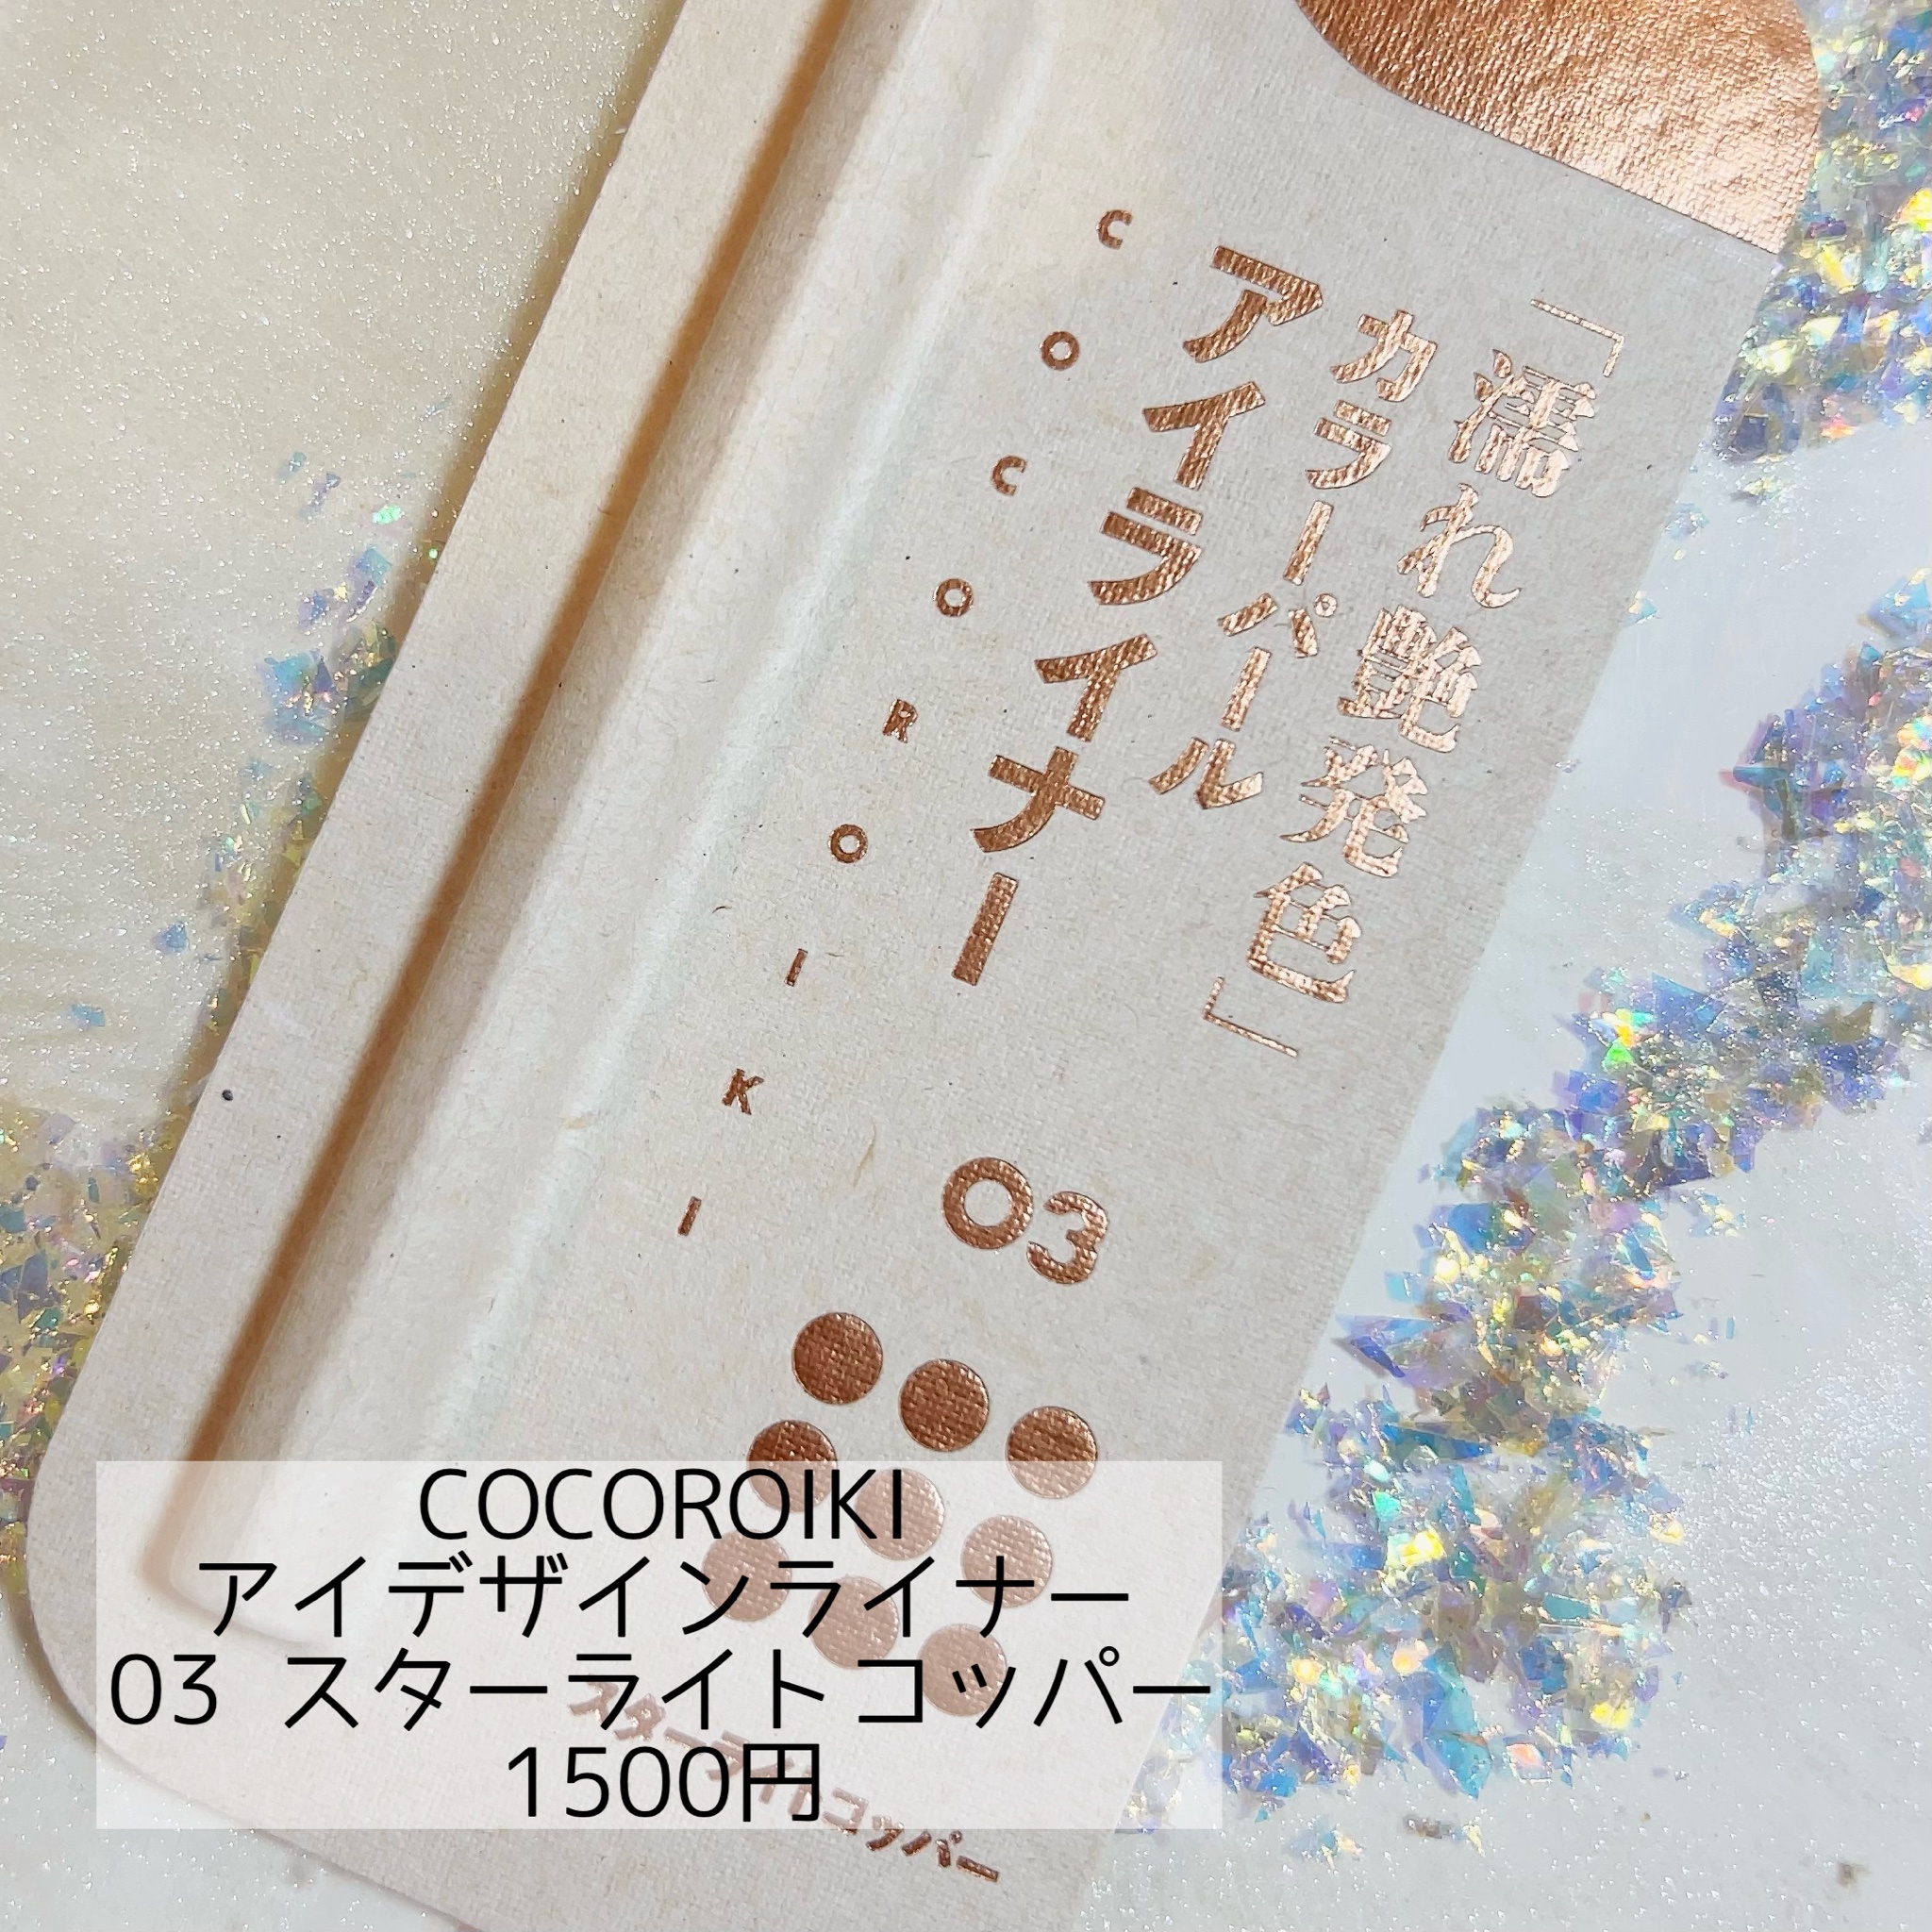 COCOROIKI / アイデザインライナー 03 スターライトコッパーの公式商品